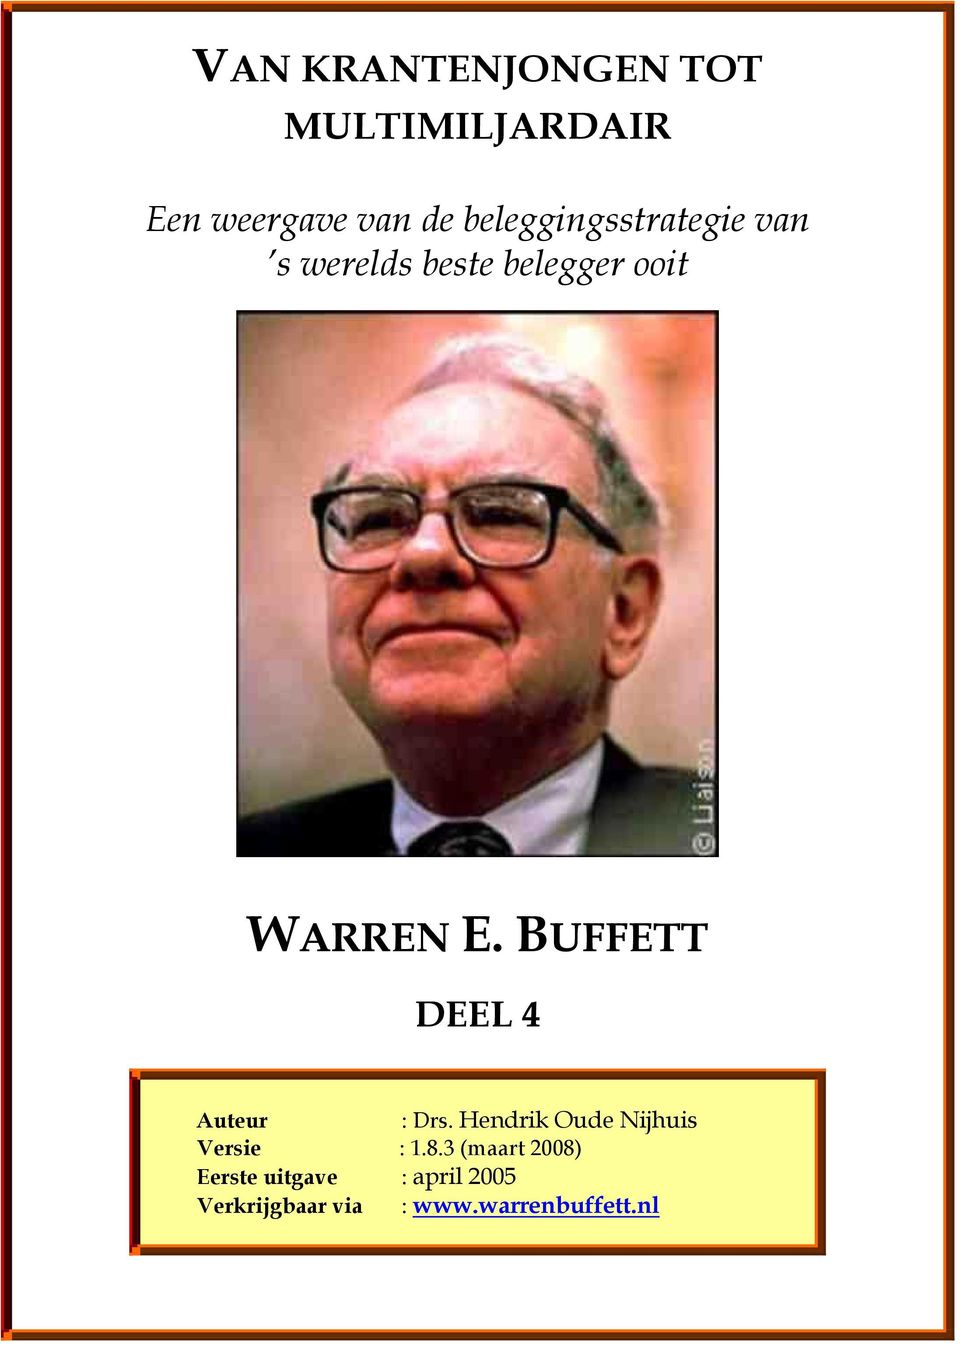 BUFFETT DEEL 4 Auteur : Drs. Hendrik Oude Nijhuis Versie : 1.8.